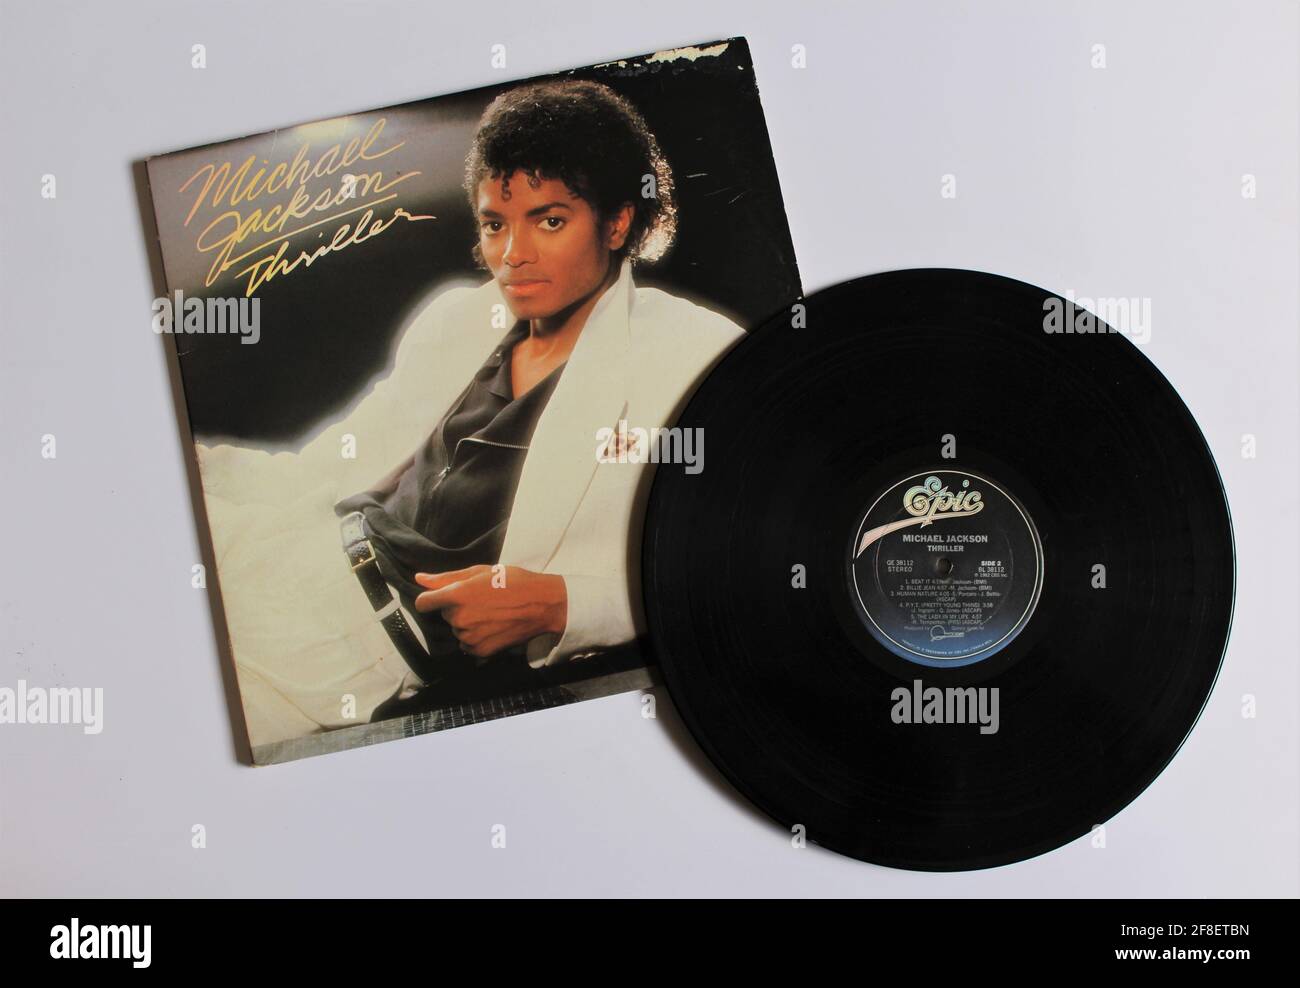 Pop-, Disco-, Rock- und Funk-Künstler, Michael Jackson-Musikalbum auf Vinyl- LP-Schallplatte. Titel: Thriller Album Cover Stockfotografie - Alamy